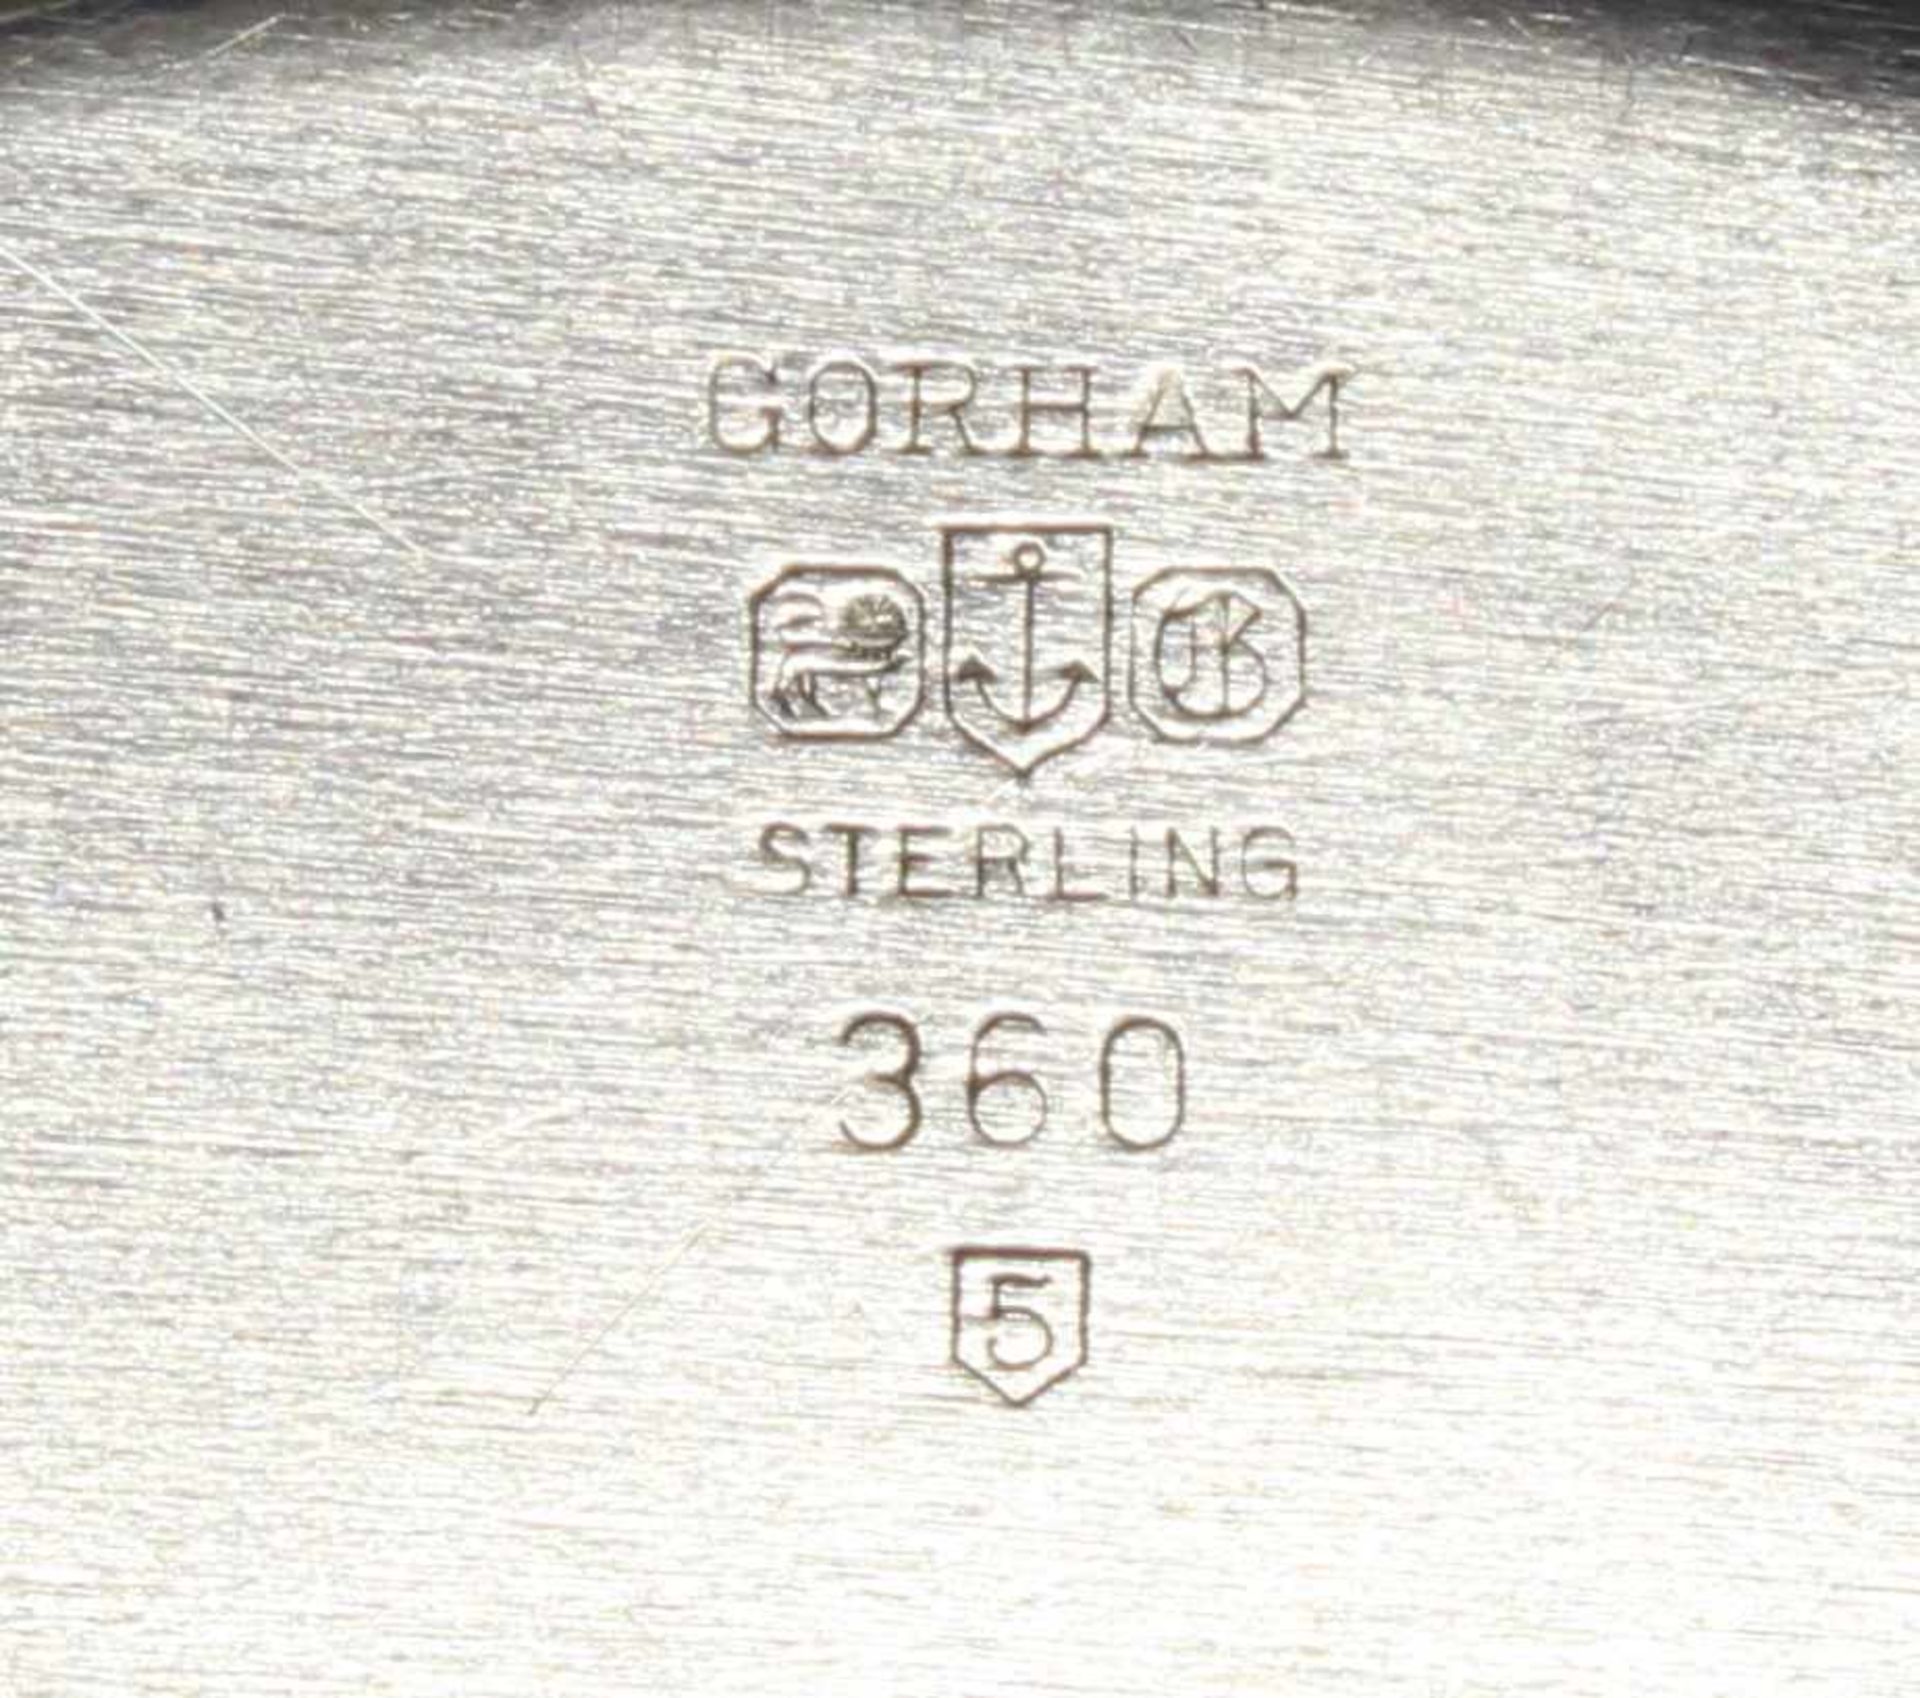 Saucière mit Présentoir, Silber 925, Gorham, profilierter Rand, gesamt 11 x 22 x 13.7 cm, zus. ca. - Image 3 of 4